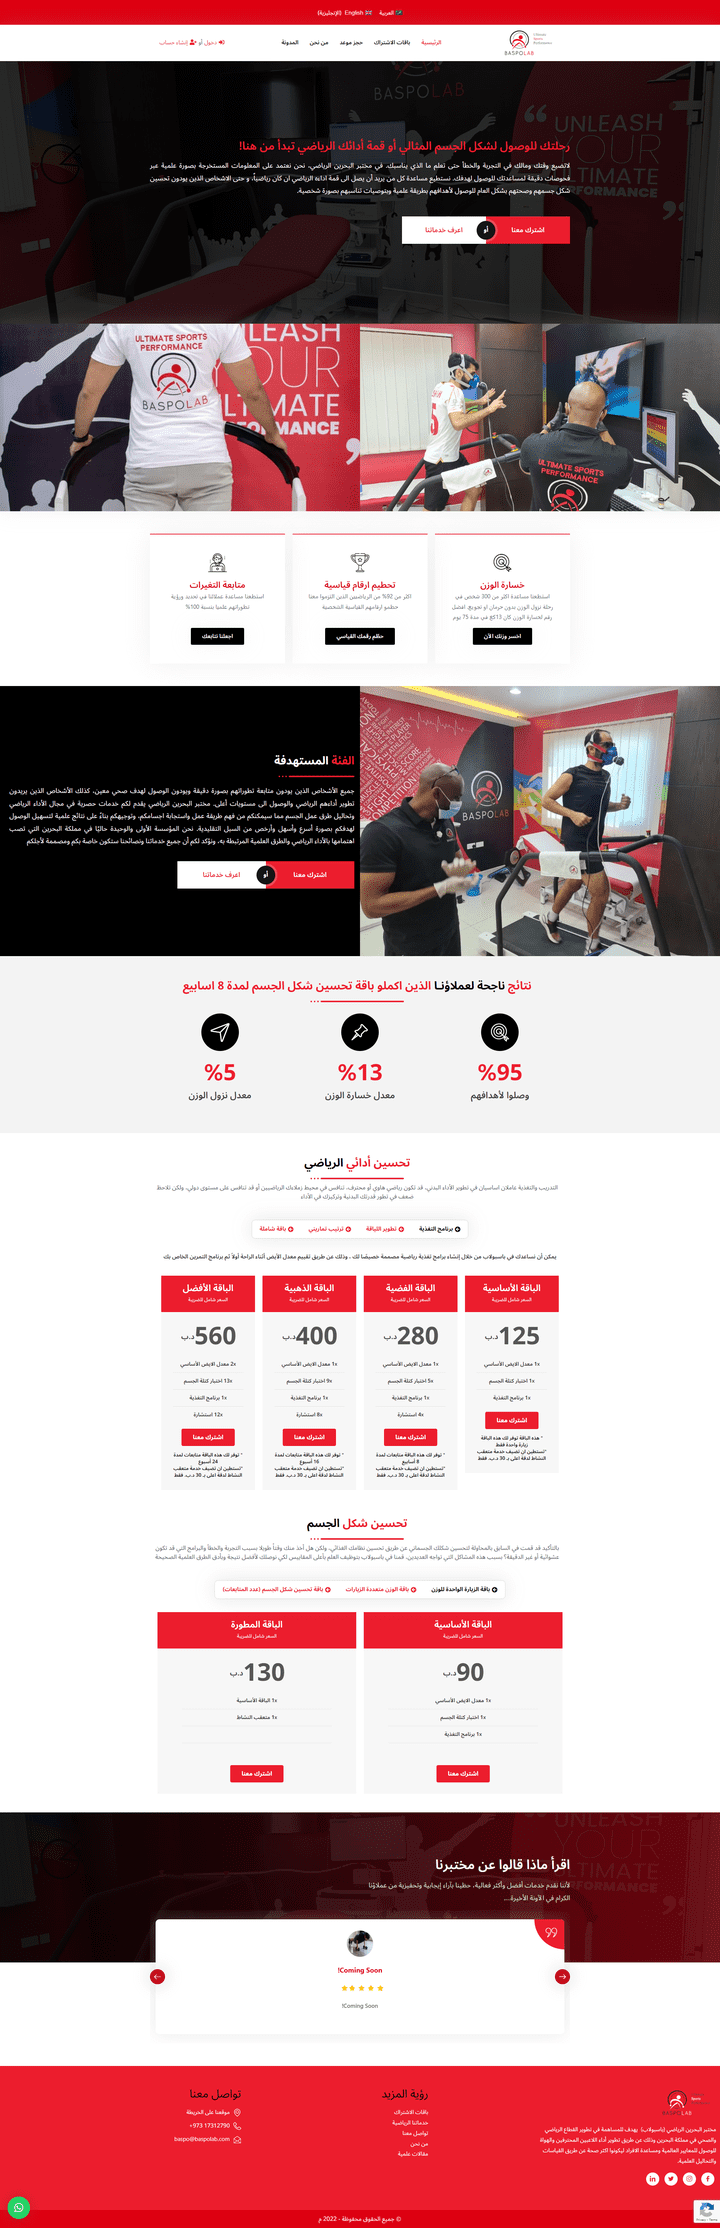 موقع ويب لشركة باسبولاب — المختبر الرياضي بالبحرين